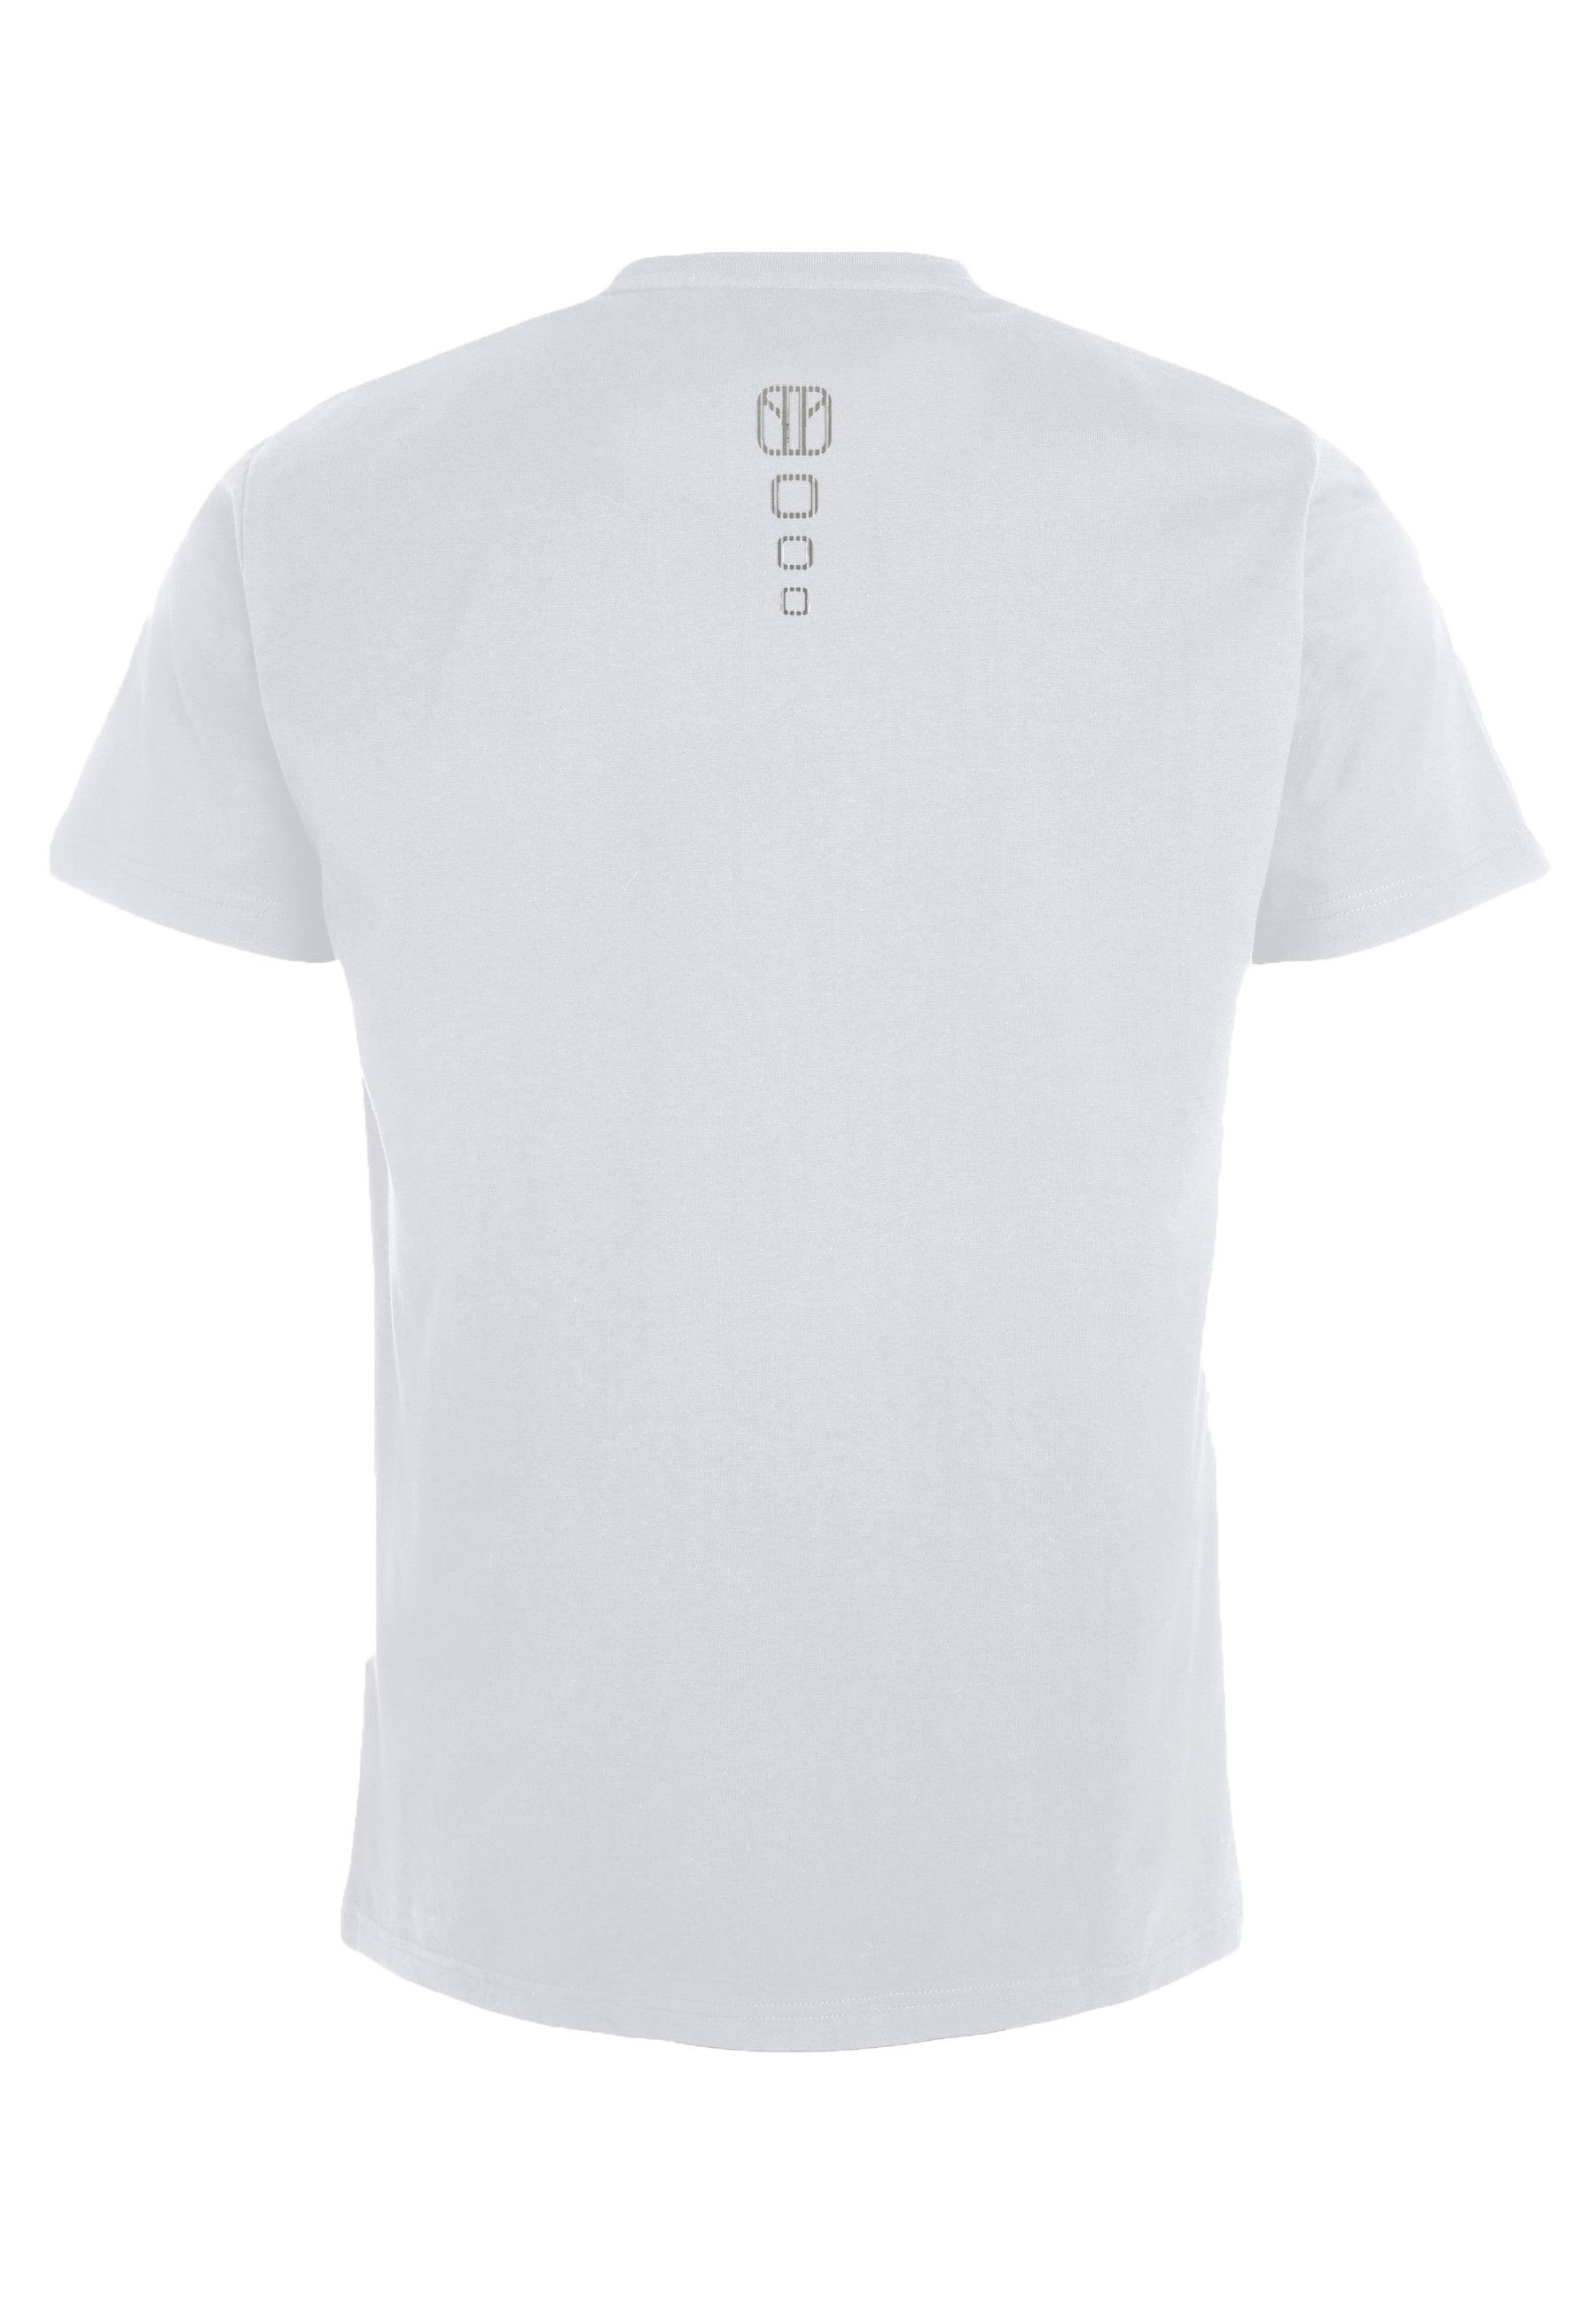 T-Shirt Elkline white V-Ausschnitt Be Must